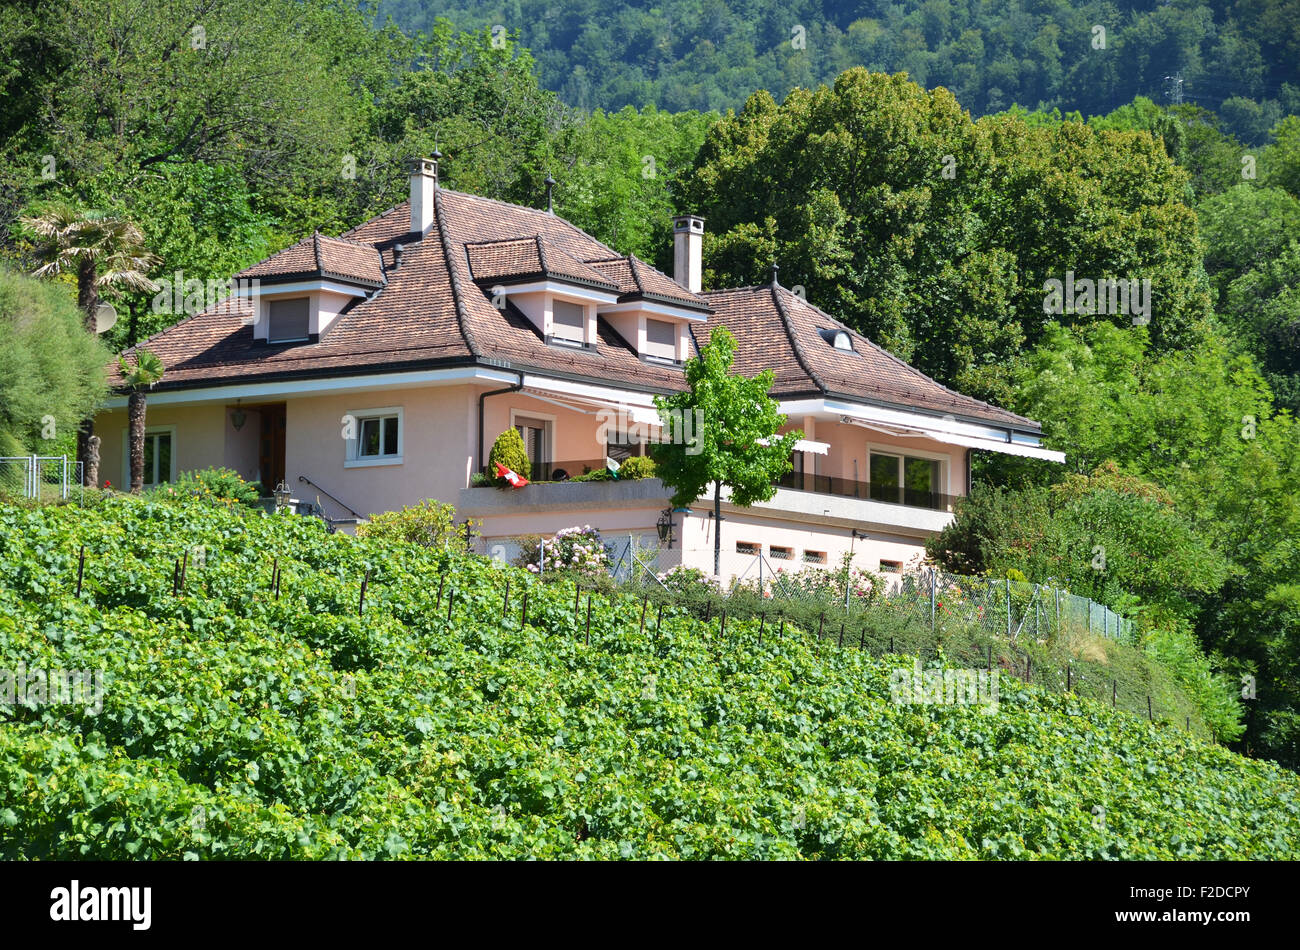 Vignobles de Lavaux, Région, Suisse Banque D'Images